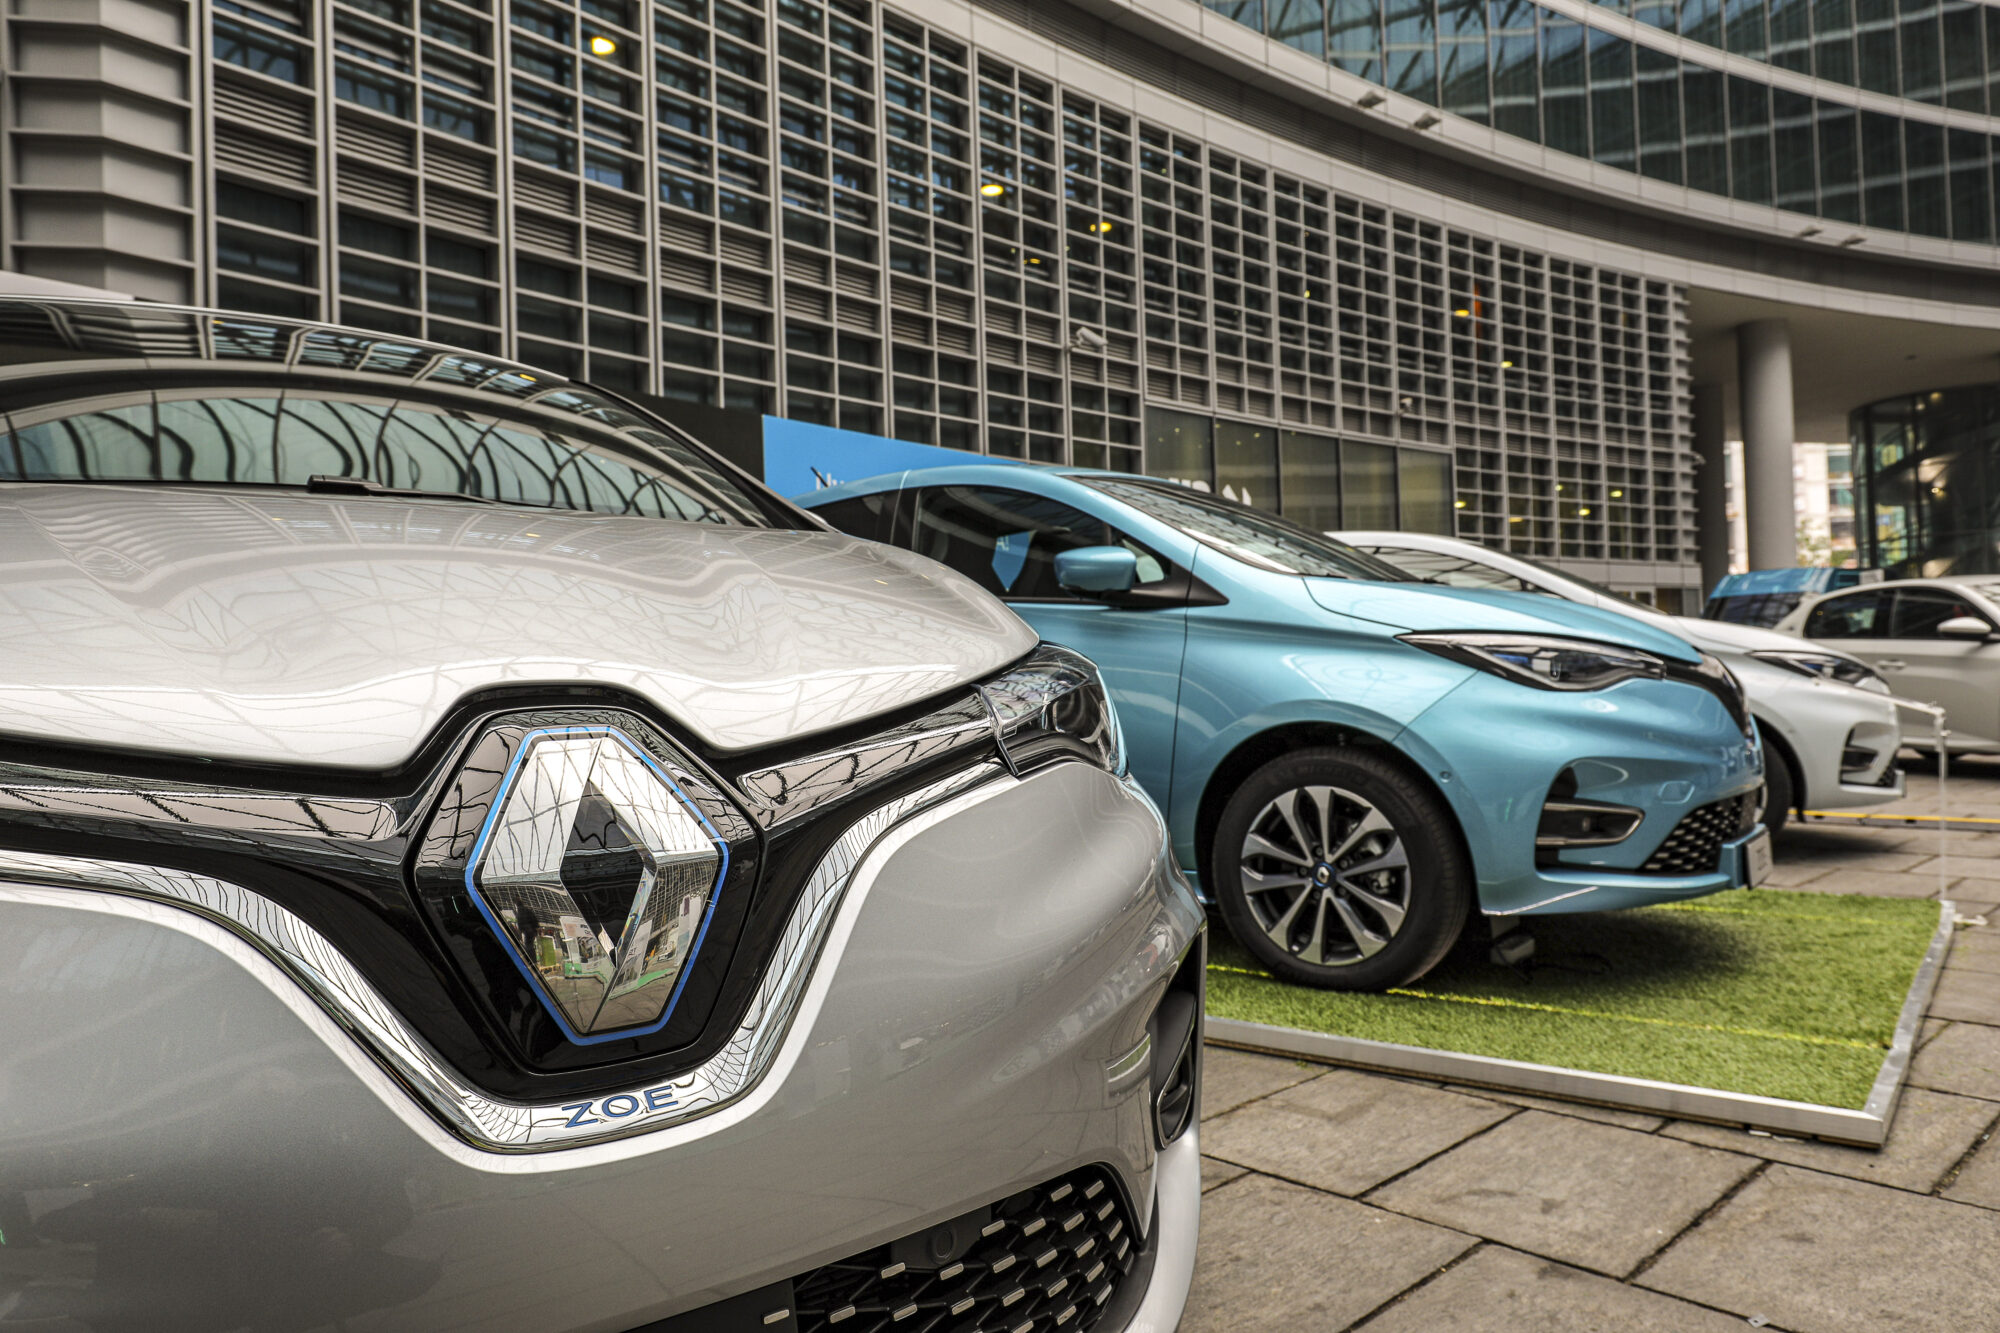 CS - Nuova Renault ZOE protagonista della terza edizione di 